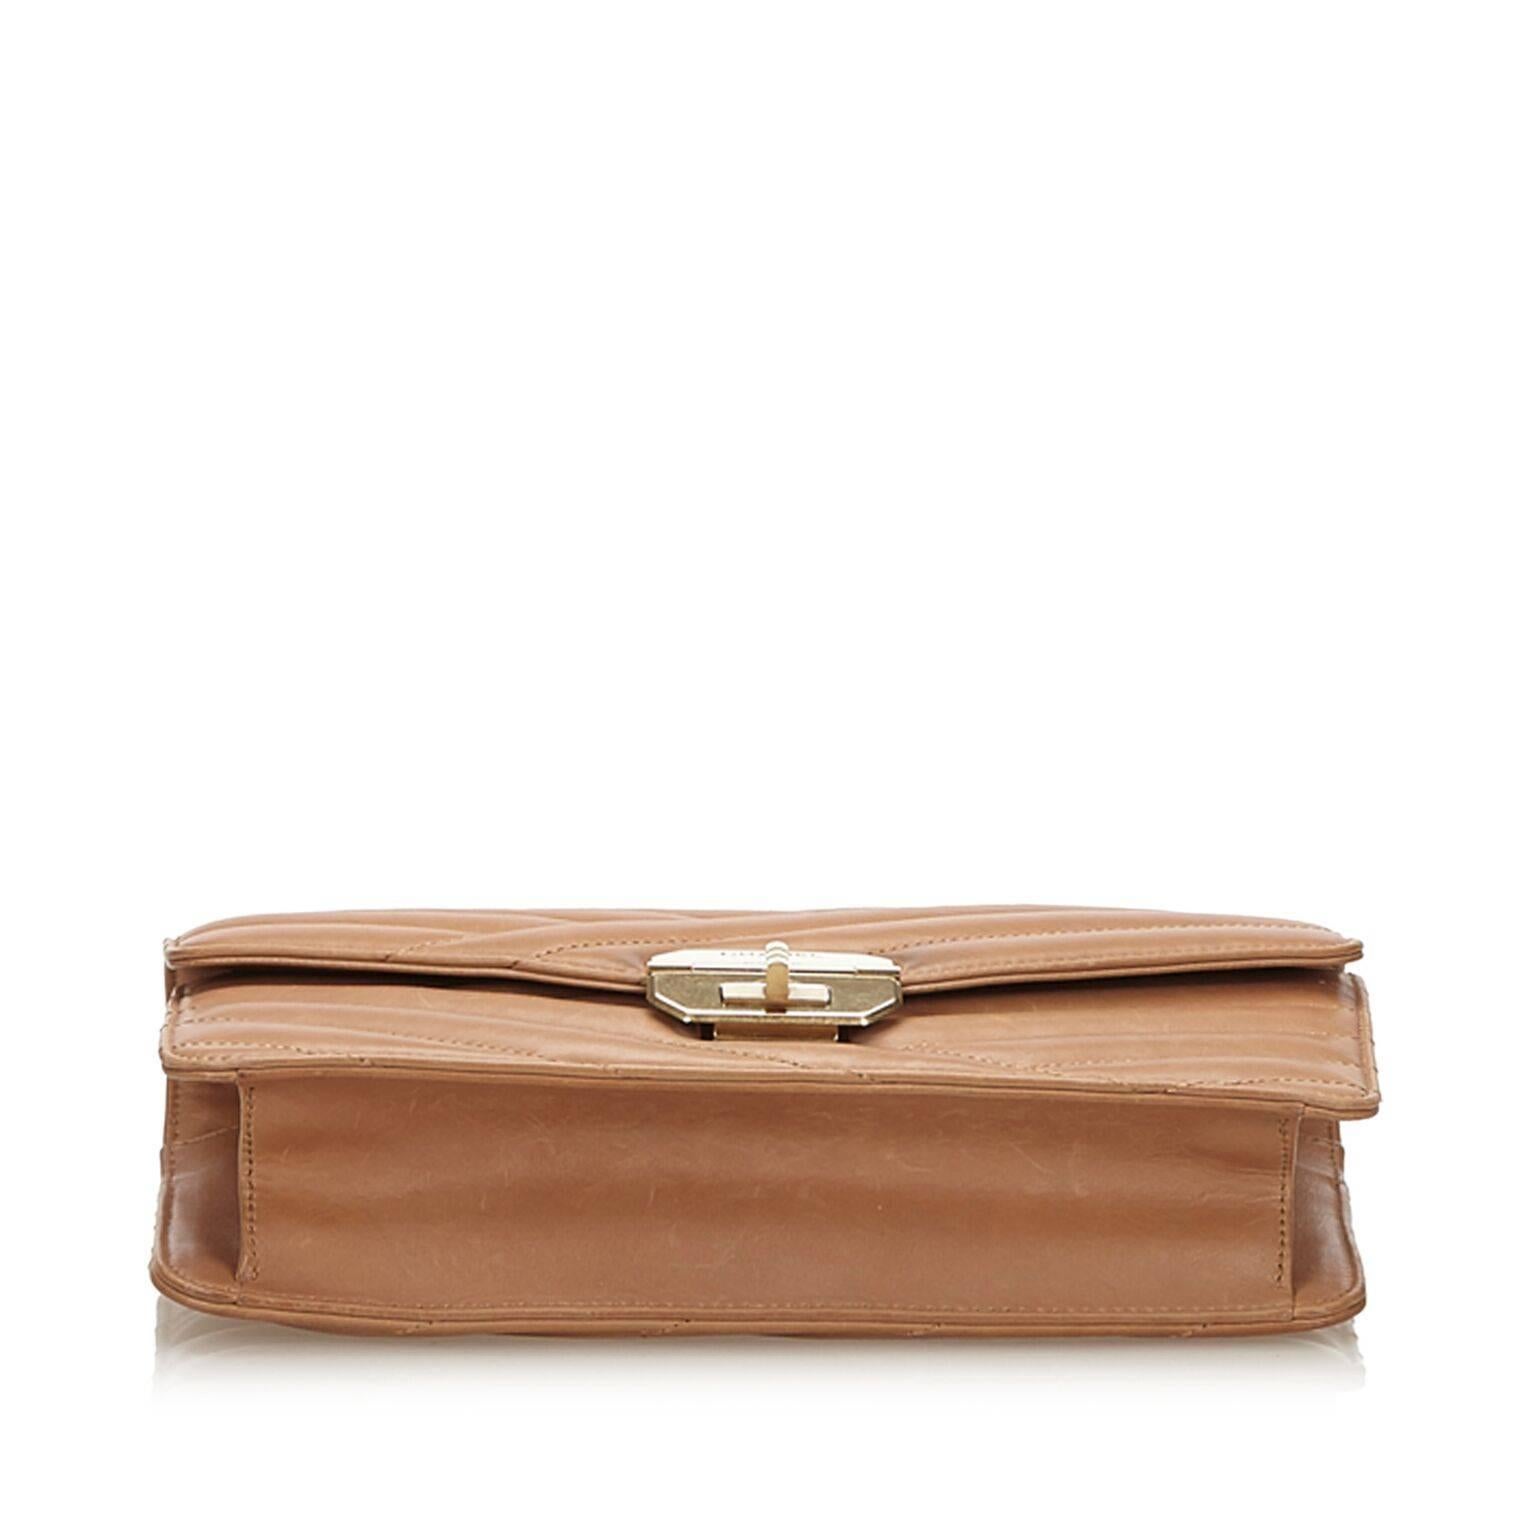 Brown Tan Chanel Medium Gabrielle Flap Bag